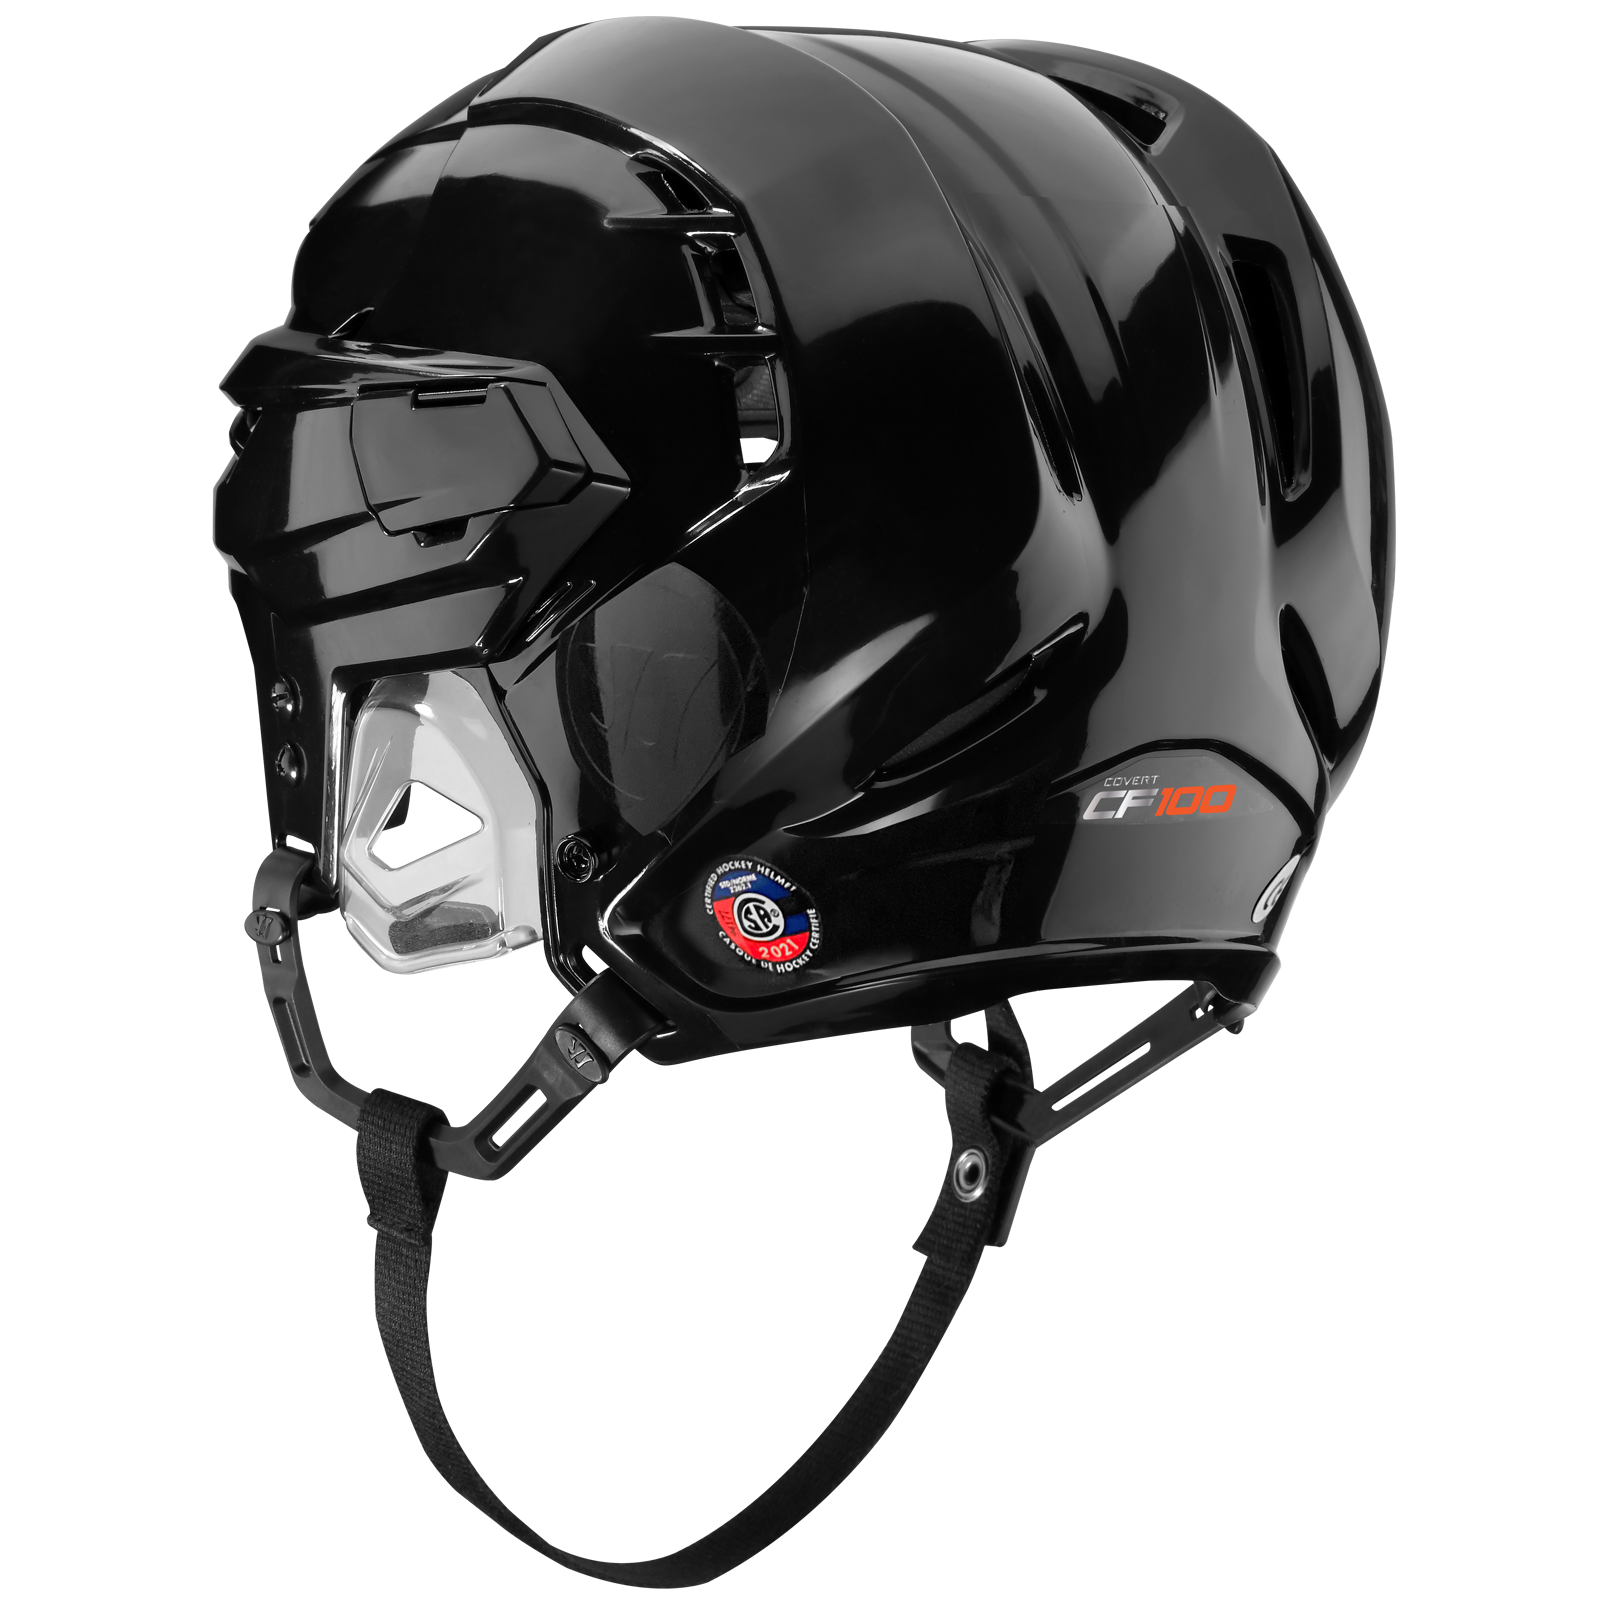 Warrior CF 100 Box Lacrosse Helmet